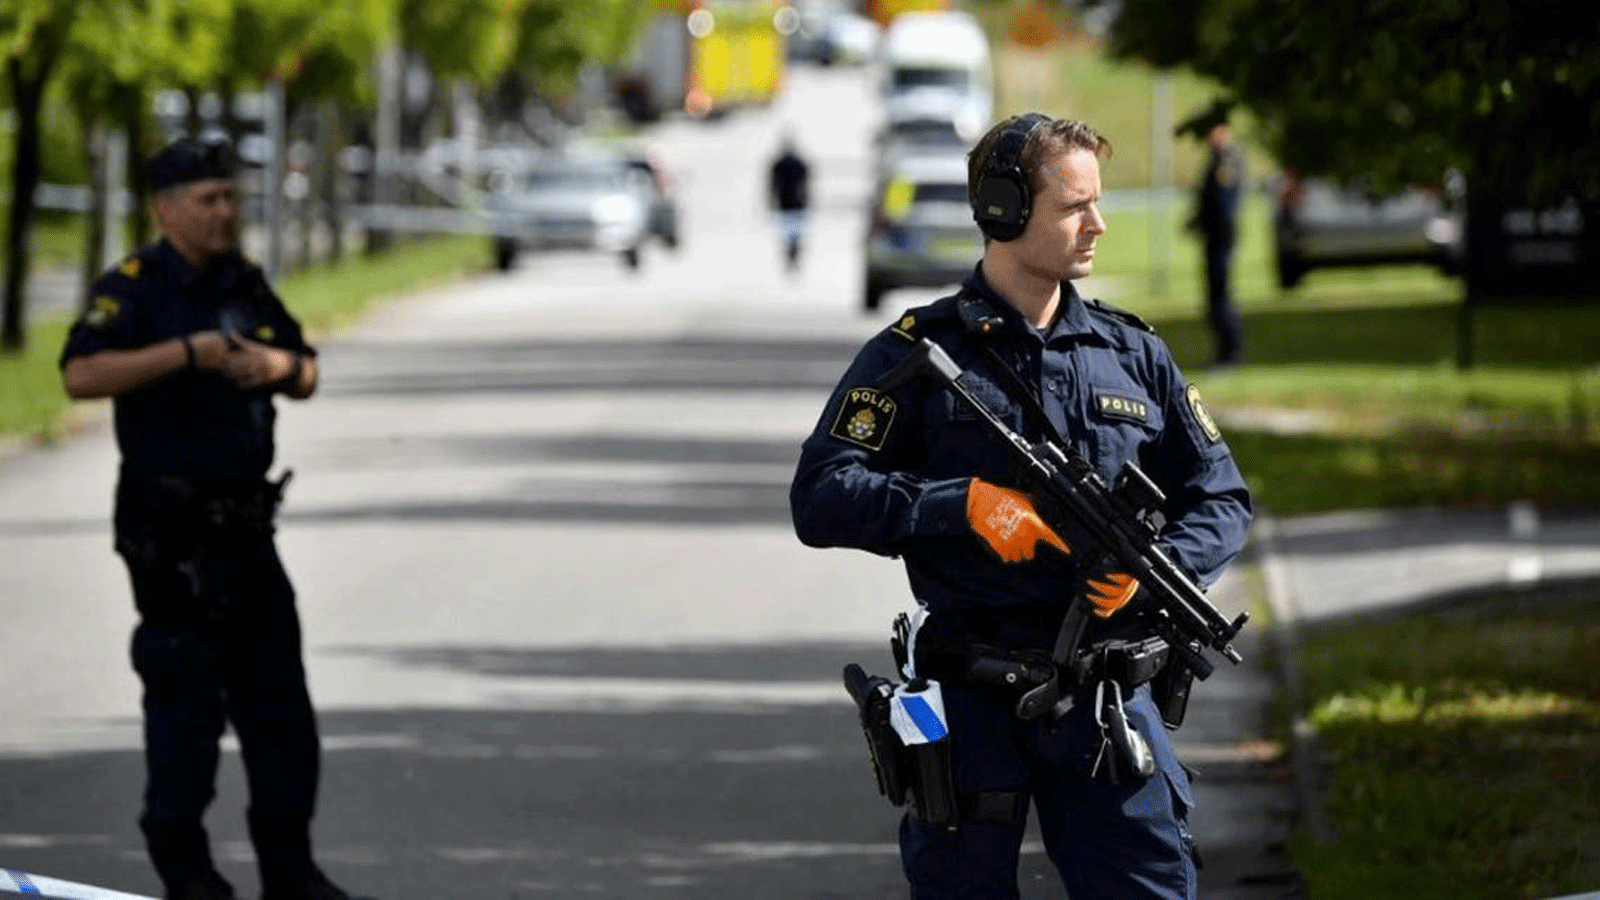 صورة لعناصر من الشرطة السويدية بالقرب من مكان تعرض لهجوم قرب مدرسة في Esloev، جنوب السويد. 19 آب/ أغسطس 2021